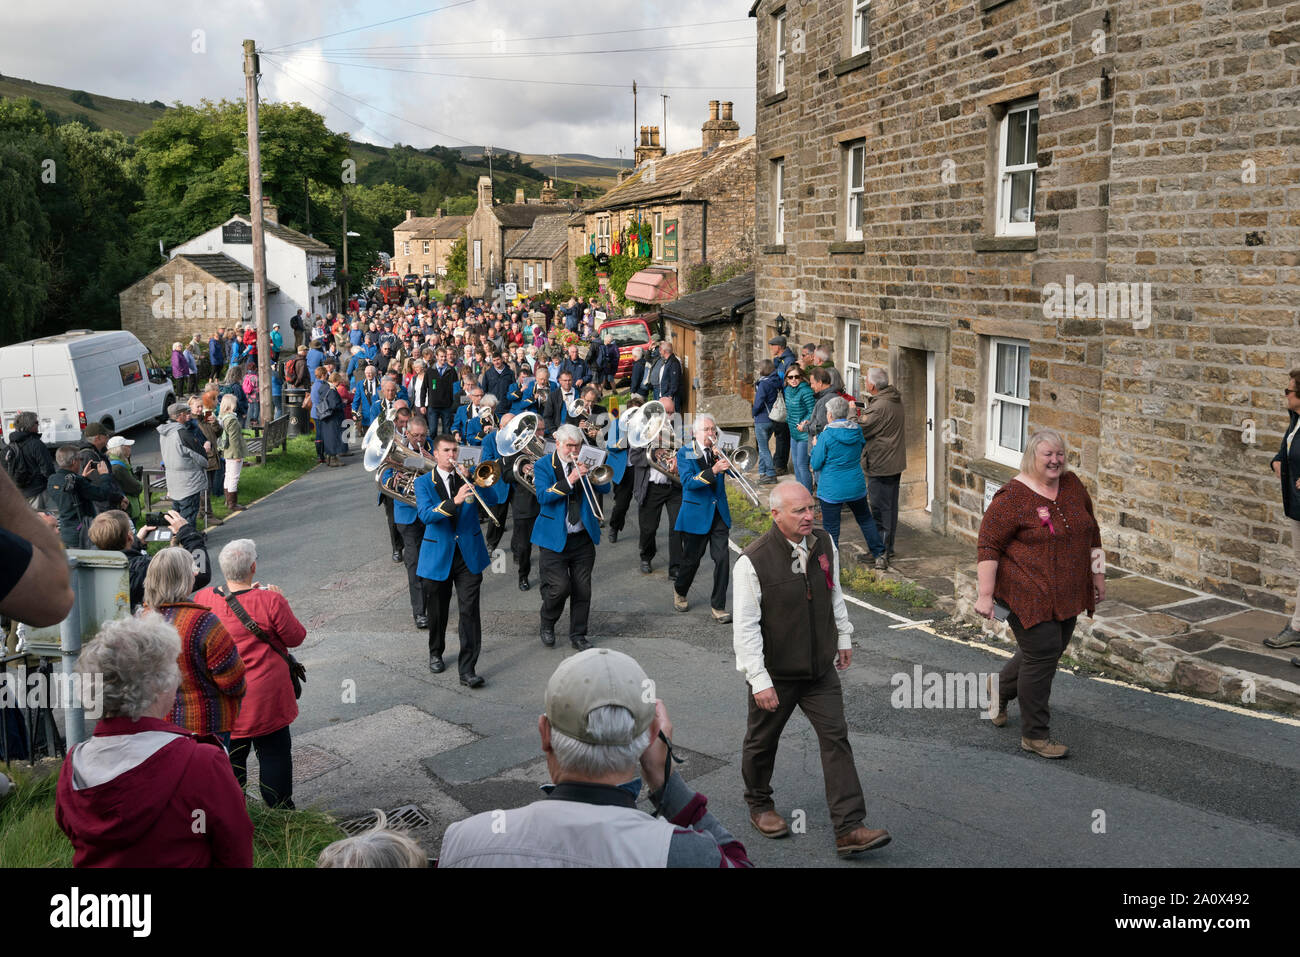 Banda plateada Muker encabezar la procesión por la aldea para abrir el show, Swaledale Muker, North Yorkshire, septiembre de 2019 Foto de stock